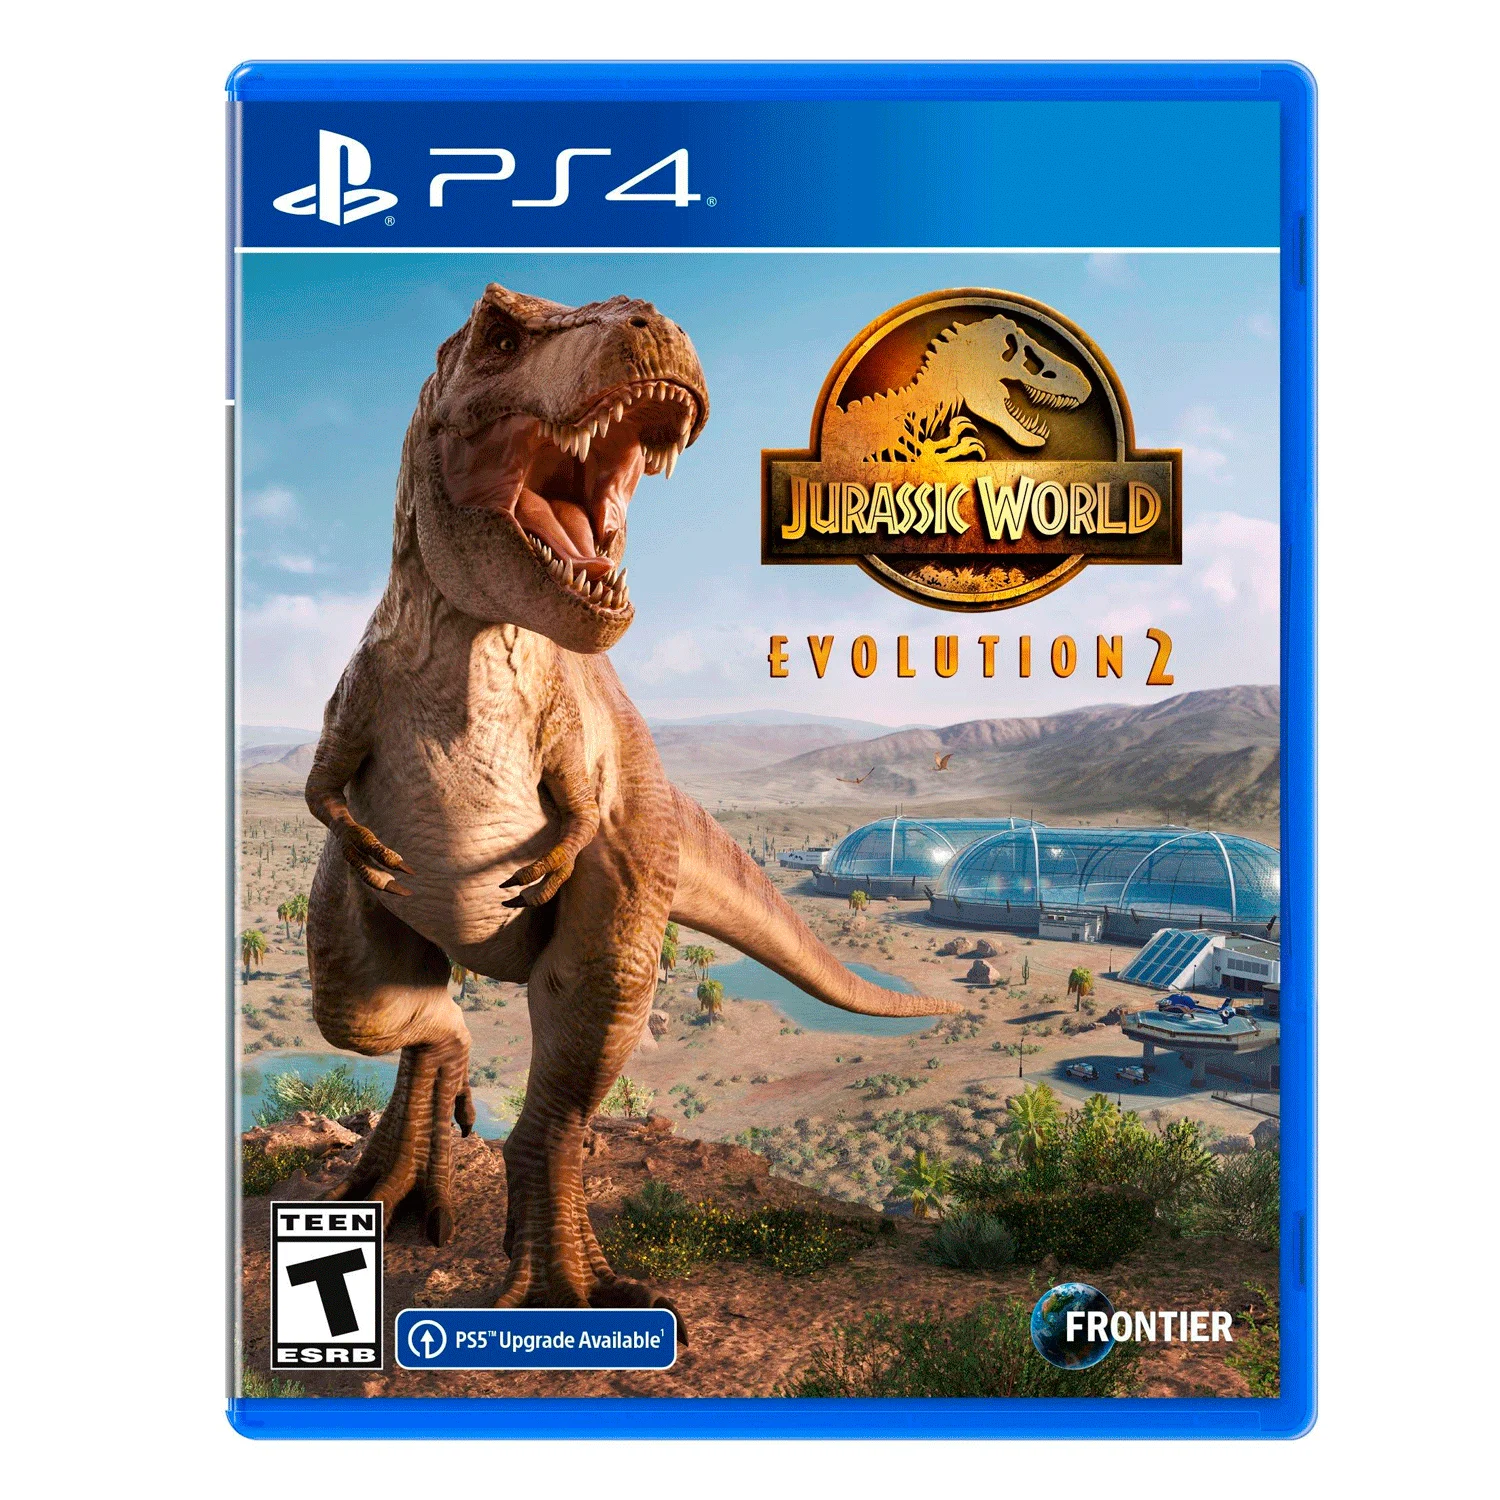 Um dinossauro jogando um jogo com um controle que diz 'mundo jurássico